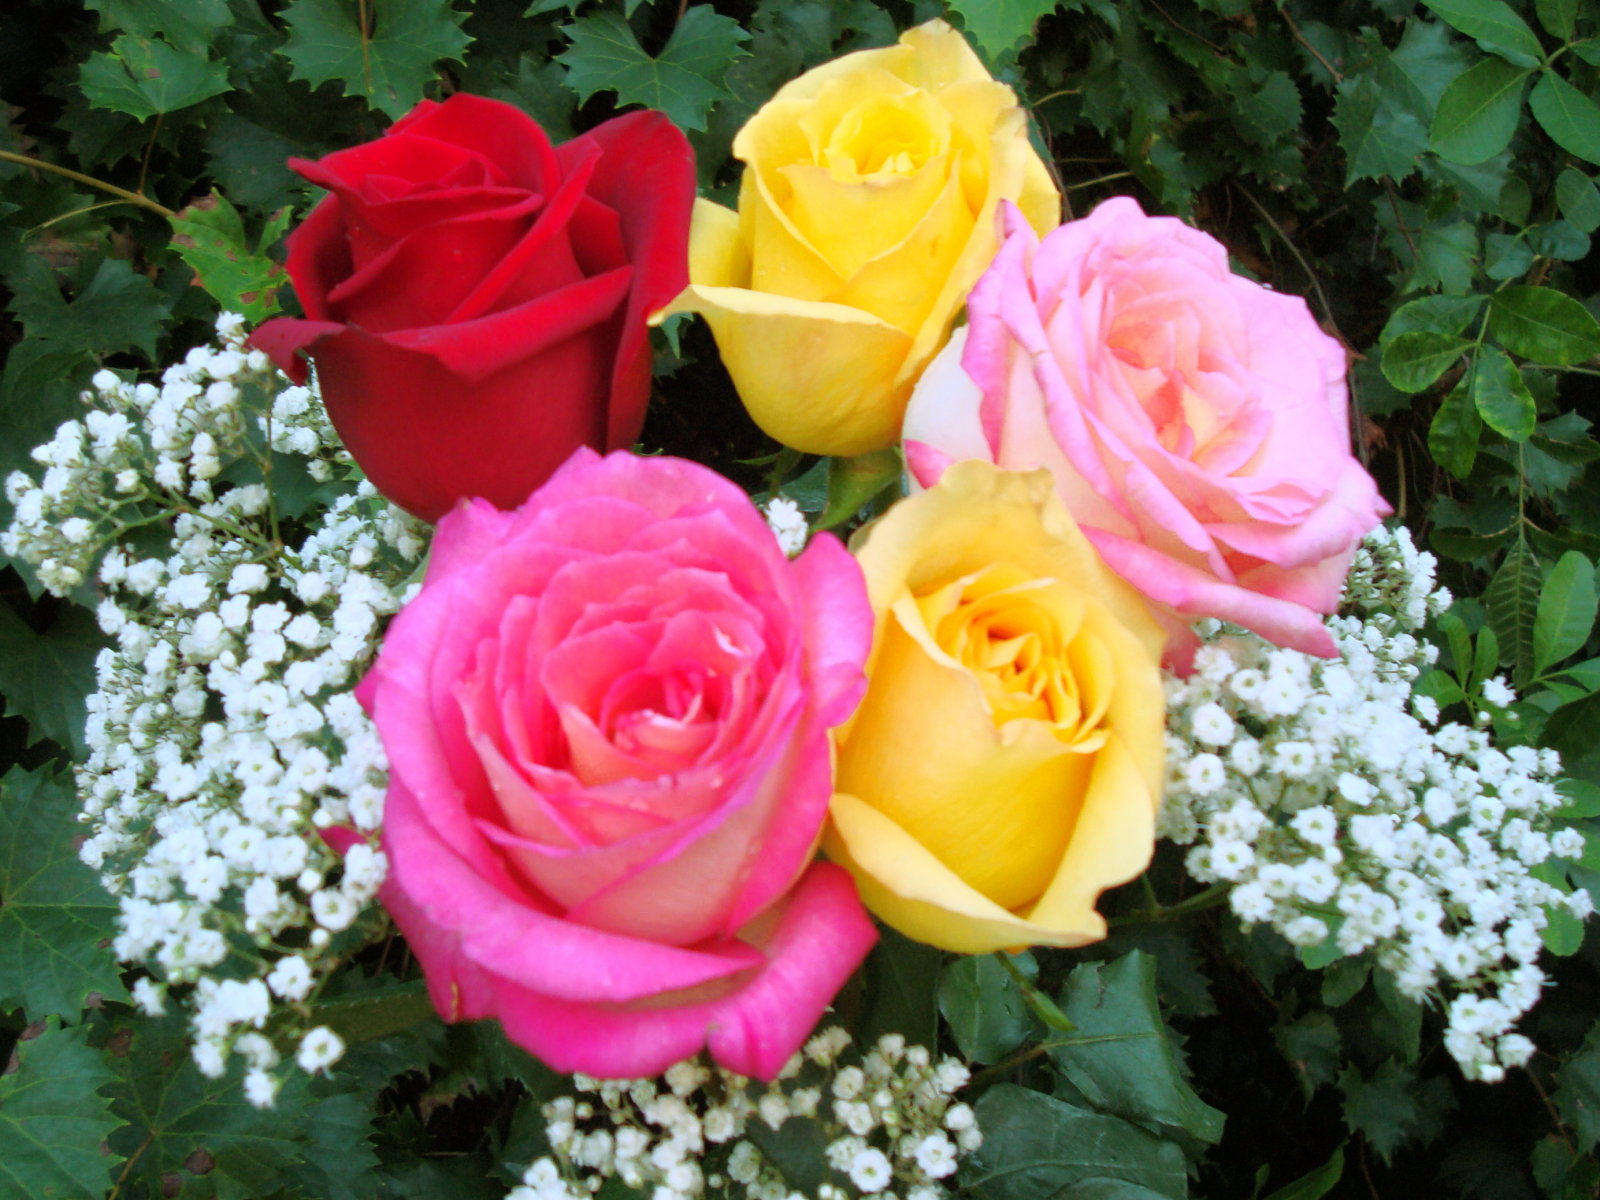 roses_bouquet_dsc00042.jpg